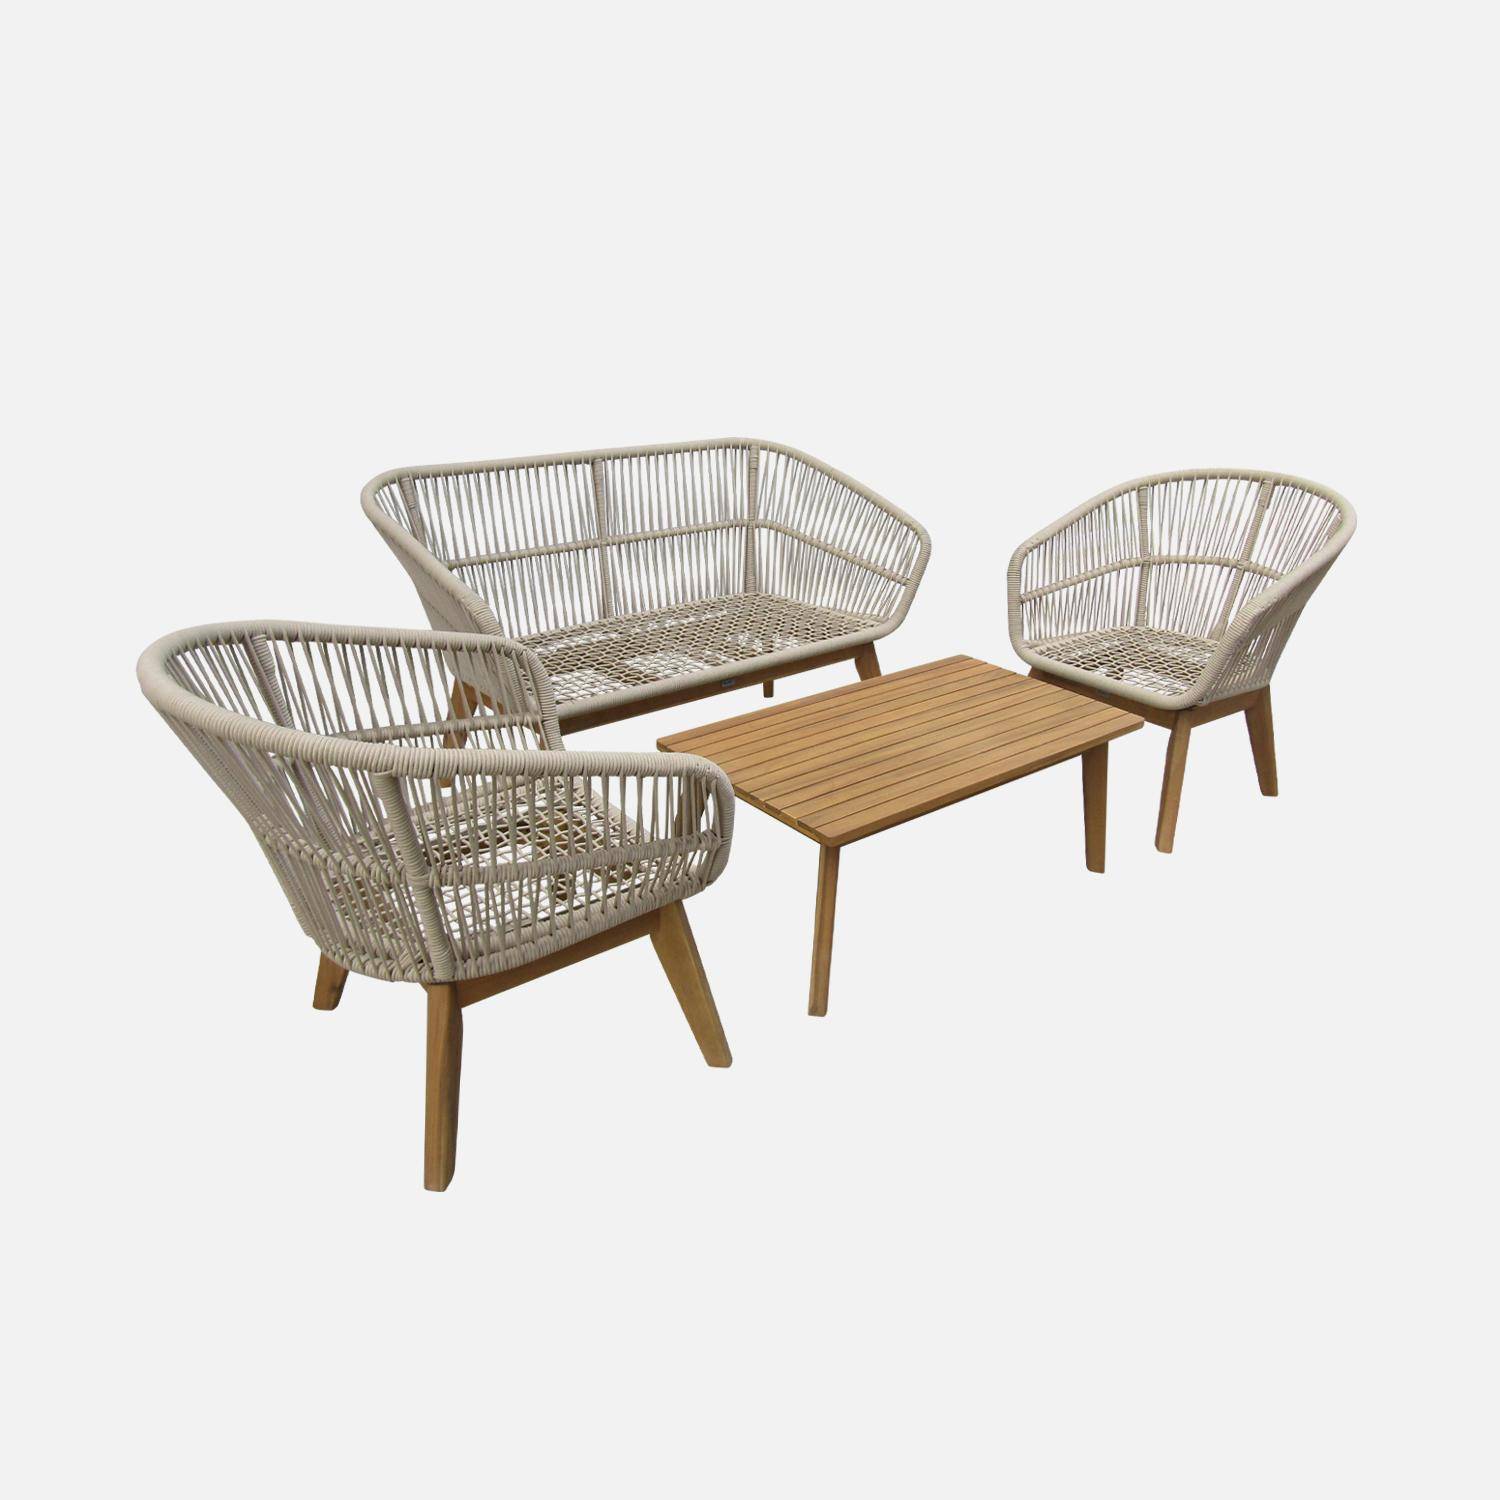 Gartengarnitur 4 Sitze - ROSARIO - aus geflochtenen Seilen, Holz und Aluminium, grau / beige Kissen Photo4